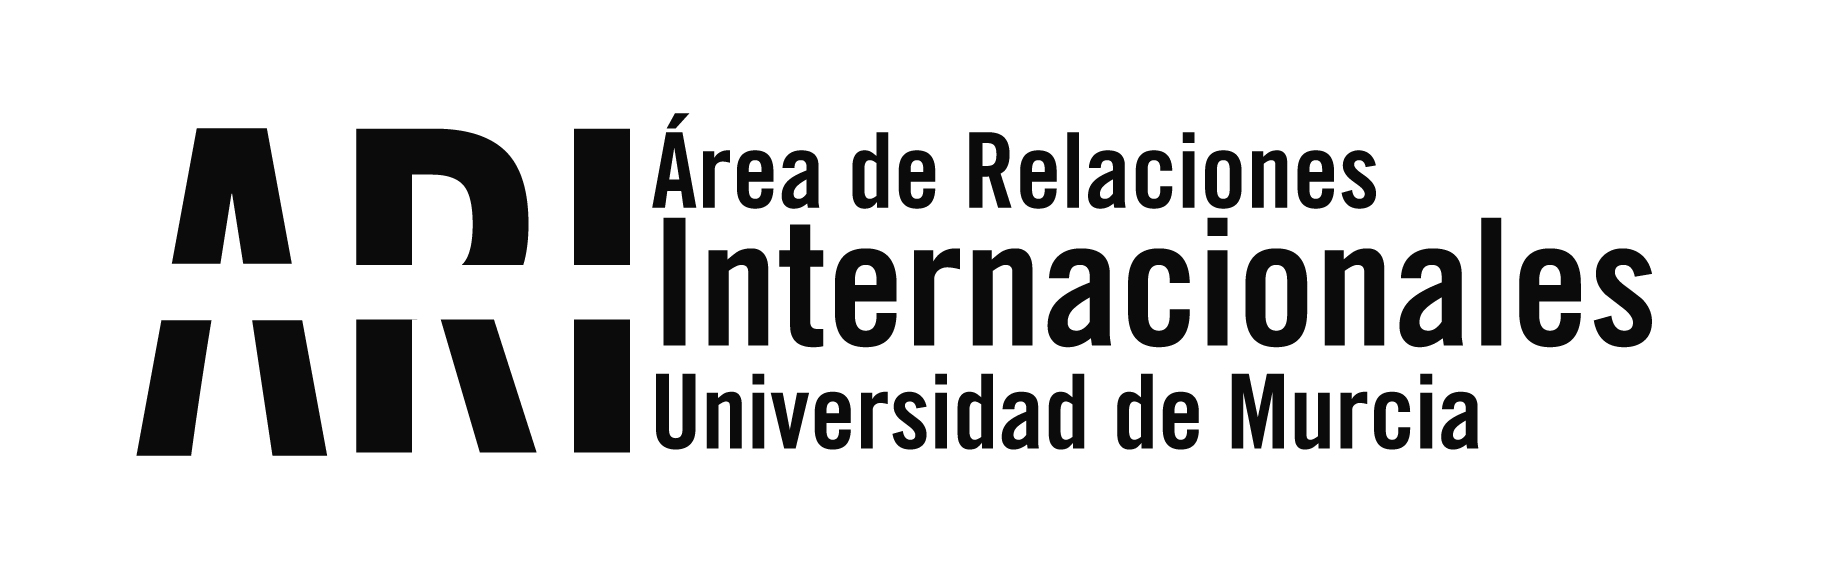 Abierta la convocatoria 2022/23 de becas MAEC-AECID para españoles y para nacionales de América Latina, África y Asia - Área de Relaciones Internacionales